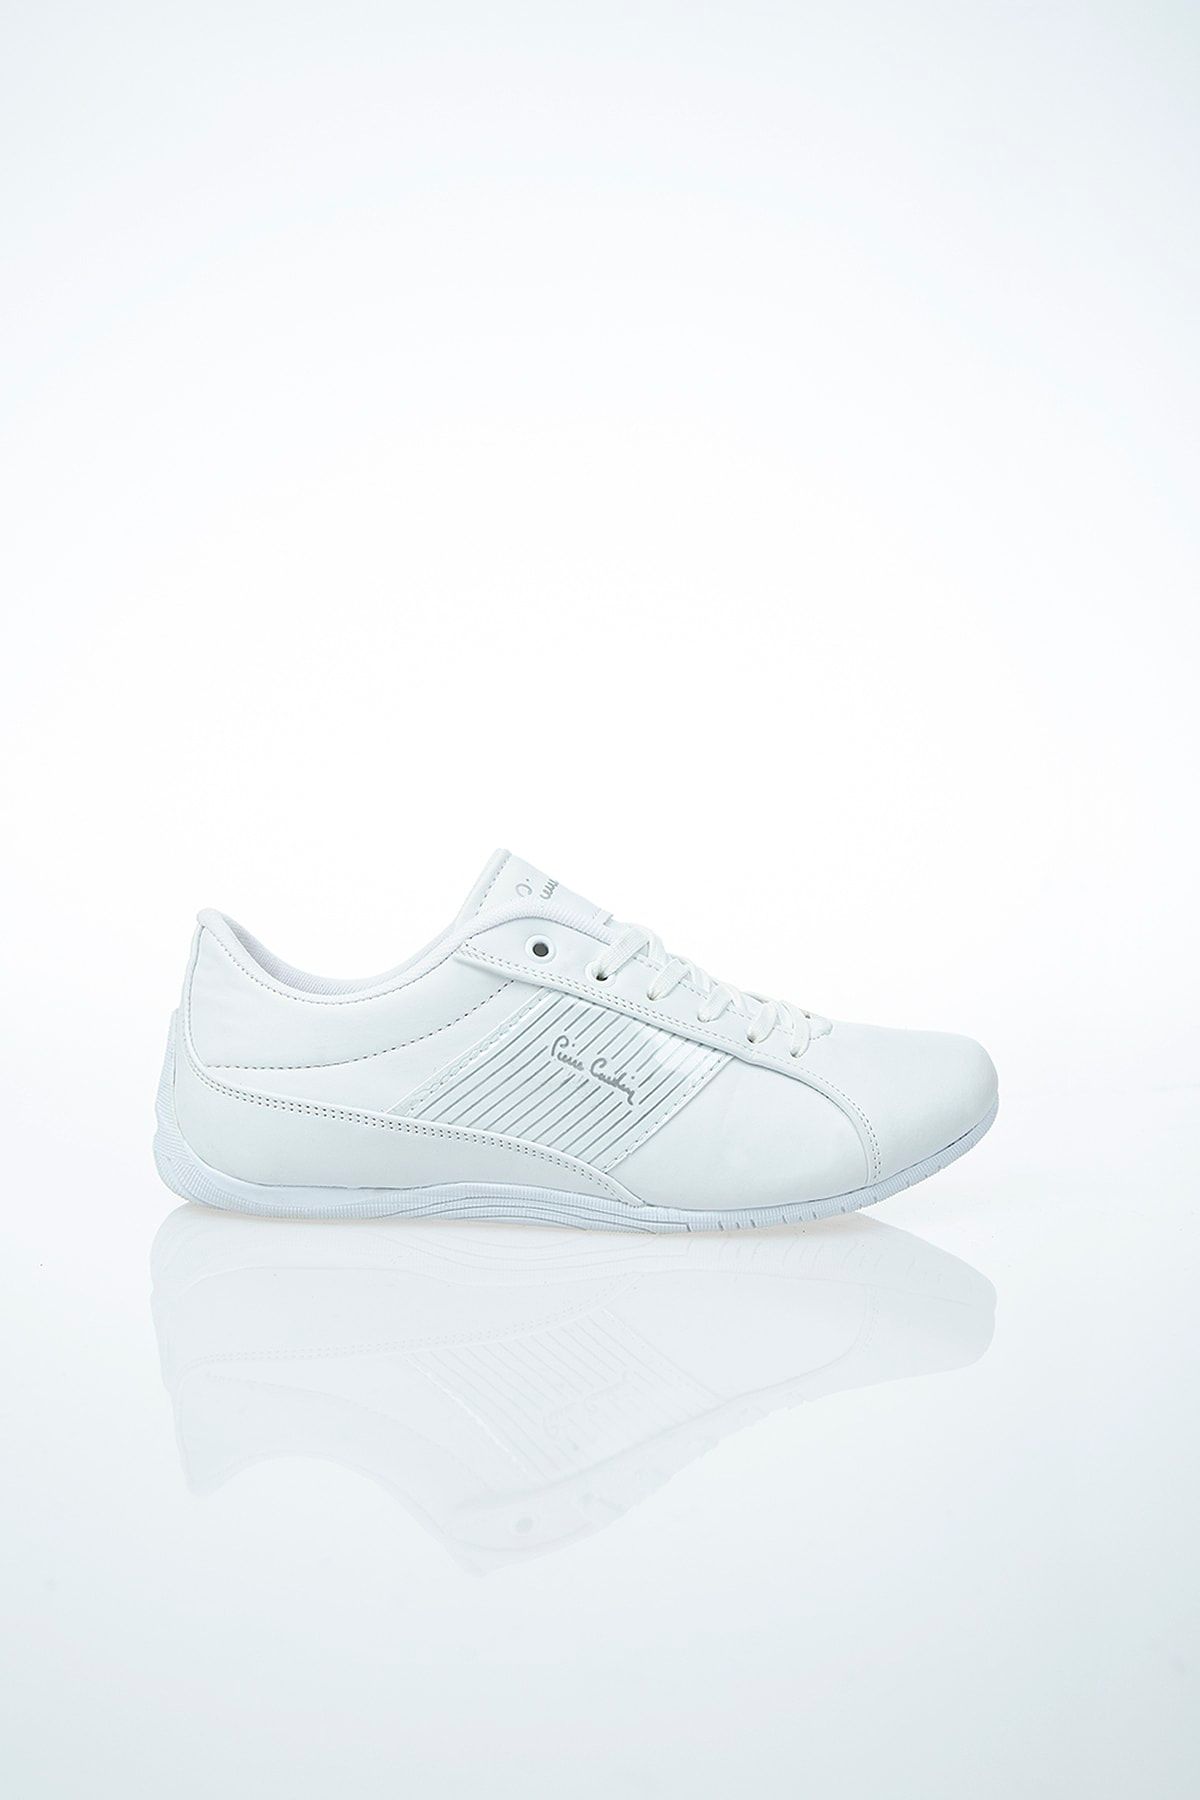 Pierre Cardin Pc-30074 Beyaz Erkek Spor Ayakkabı